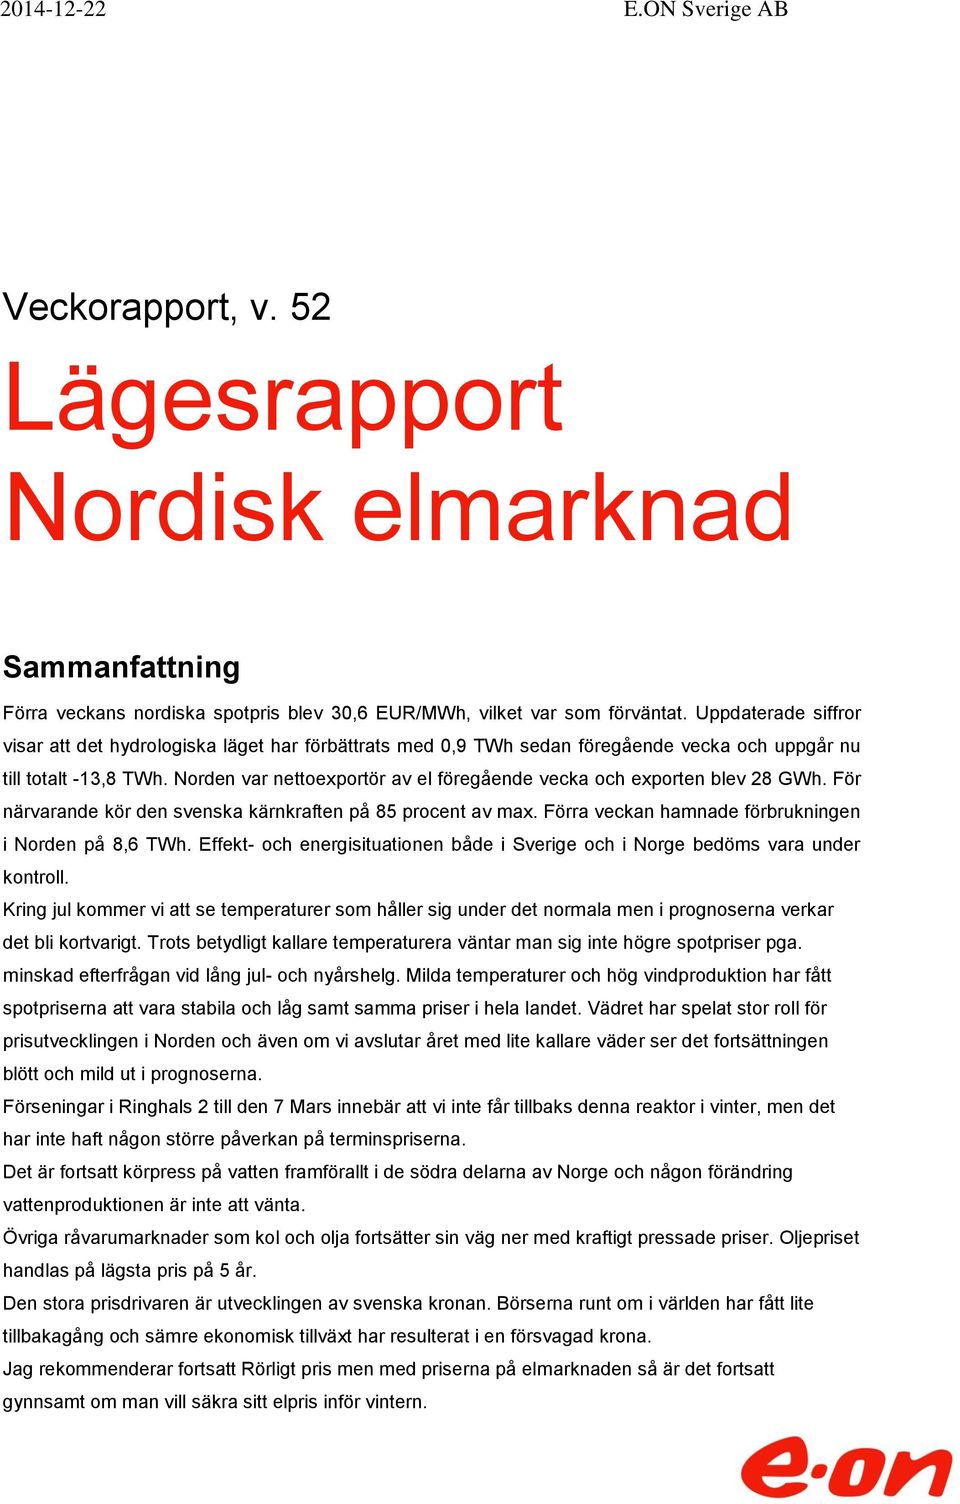 Norden var nettoexportör av el föregående vecka och exporten blev 28 GWh. För närvarande kör den svenska kärnkraften på 85 procent av max. Förra veckan hamnade förbrukningen i Norden på 8,6 TWh.